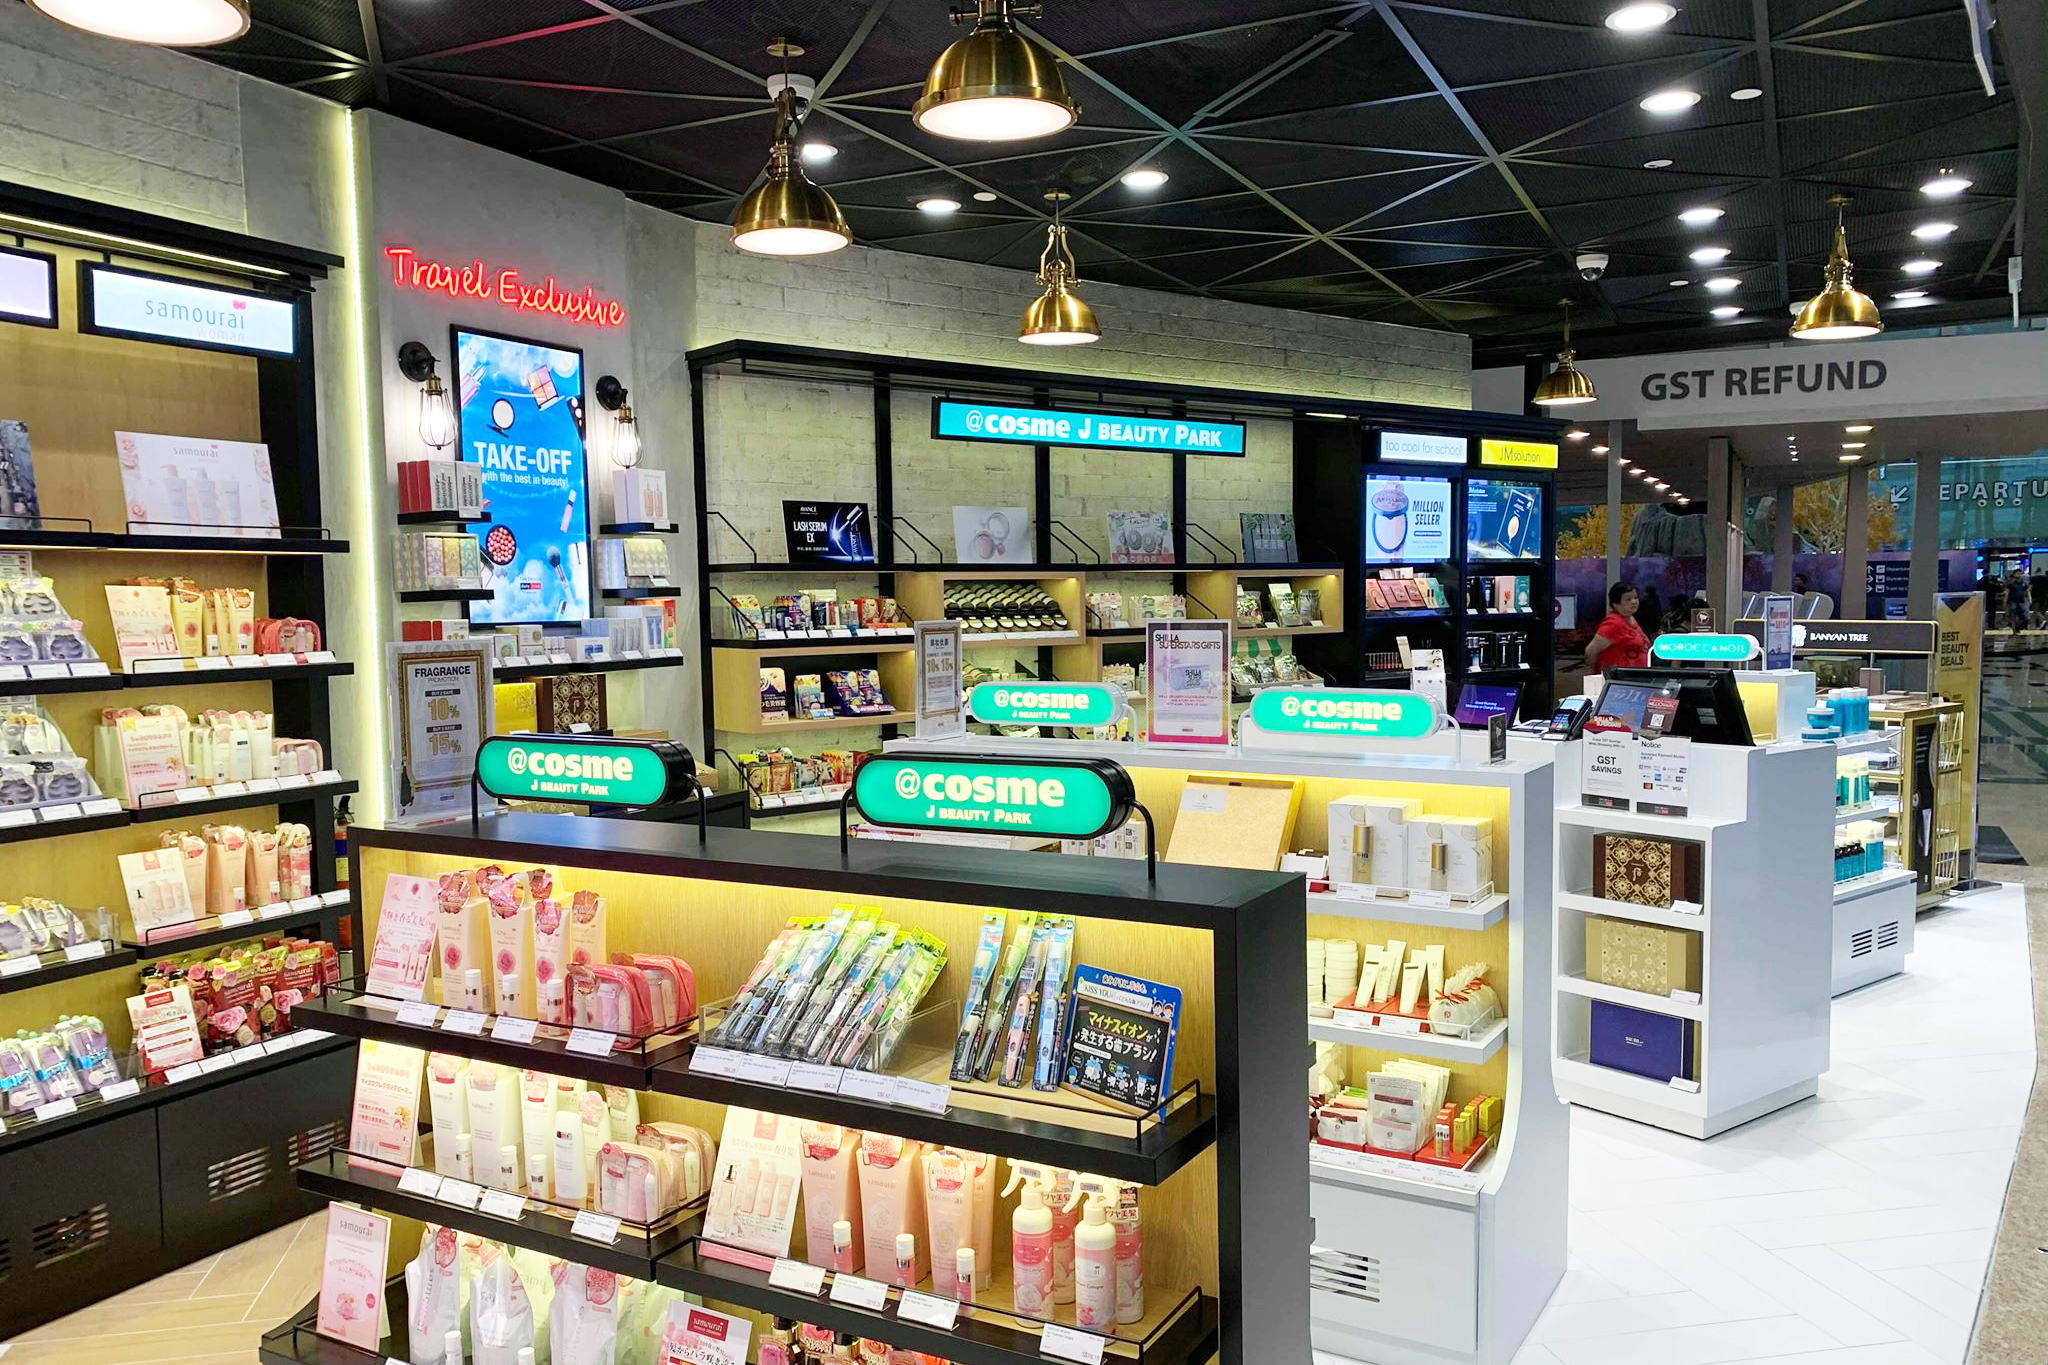 19年11月9日 アジアのハブ空港 シンガポール チャンギ空港の新羅免税店内にアイスタイルトレーディングがプロデュースする Cosme J Beauty Park がオープン Istyle 株式会社アイスタイル